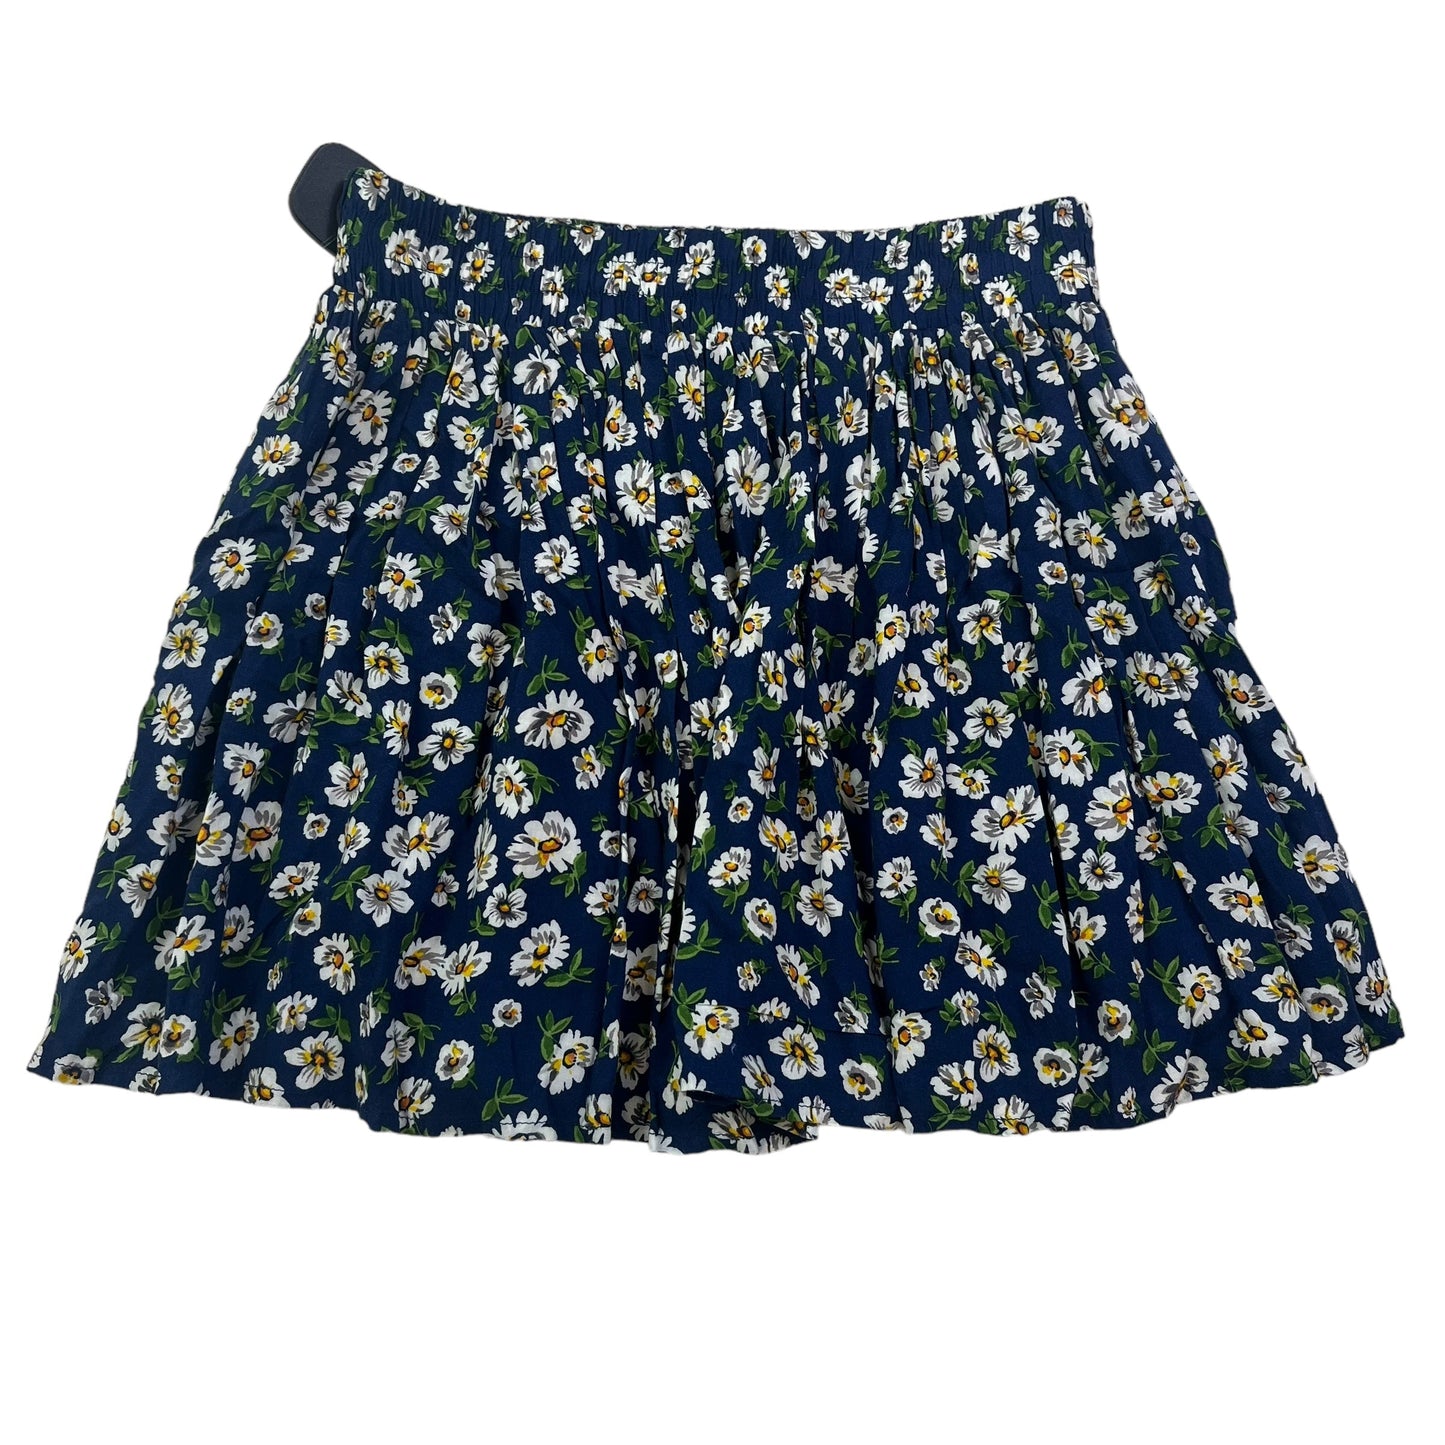 Blue Skirt Mini & Short Forever 21, Size Xs